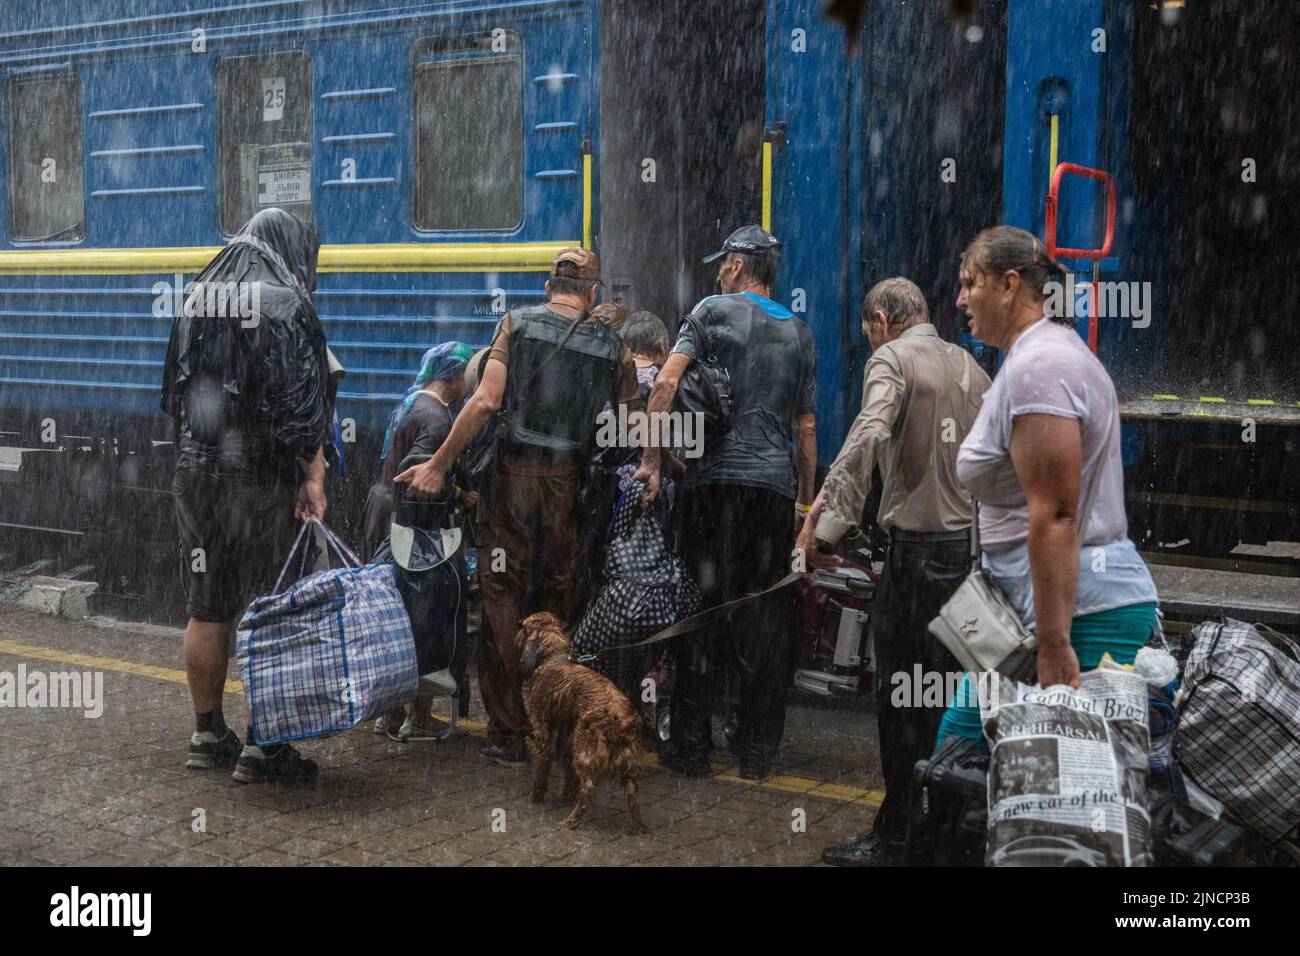 Menschen und ihre Haustiere sahen, wie sie unter starkem Regen am Bahnhof Pokrovsk in den Evakuierungszug einstiegen. Inmitten der verstärkten Kämpfe im östlichen Teil der Ukraine intensiviert die Ostukraine nun ihre zivile Evakuierung, da Millionen ukrainischer Familien aus dem immer näher rückt Krieg evakuiert wurden, da viele von ihnen in den westlichen Teil des Landes verlegt werden. Nach Angaben der Vereinten Nationen sind seit dem russischen Einmarsch in die Ukraine mindestens 12 Millionen Menschen aus ihrer Heimat geflohen, während sieben Millionen Menschen innerhalb des Landes vertrieben werden. Stockfoto